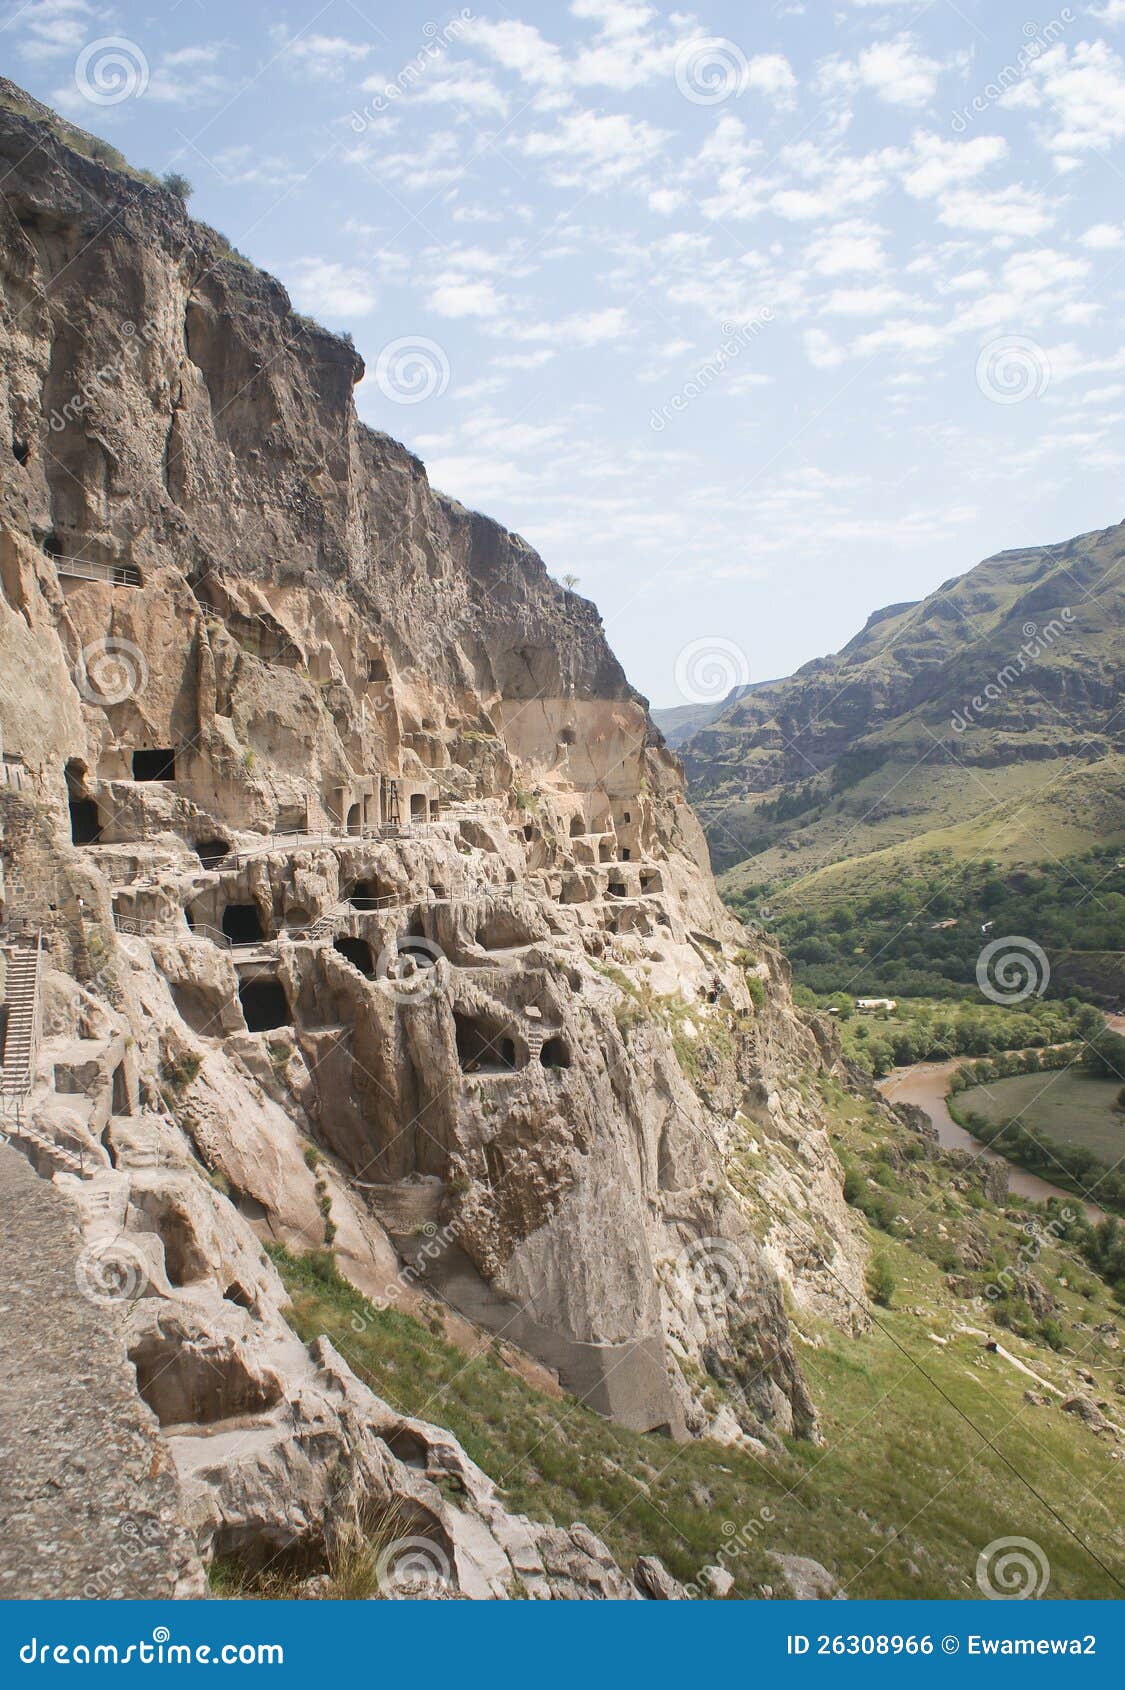 Μοναστήρι Γεωργία Vardzia. Μοναστήρι σπηλιών Vardzia στη νότια Γεωργία στην κλίση του βουνού Erusheti και τις όχθεις του ποταμού Mtkvari